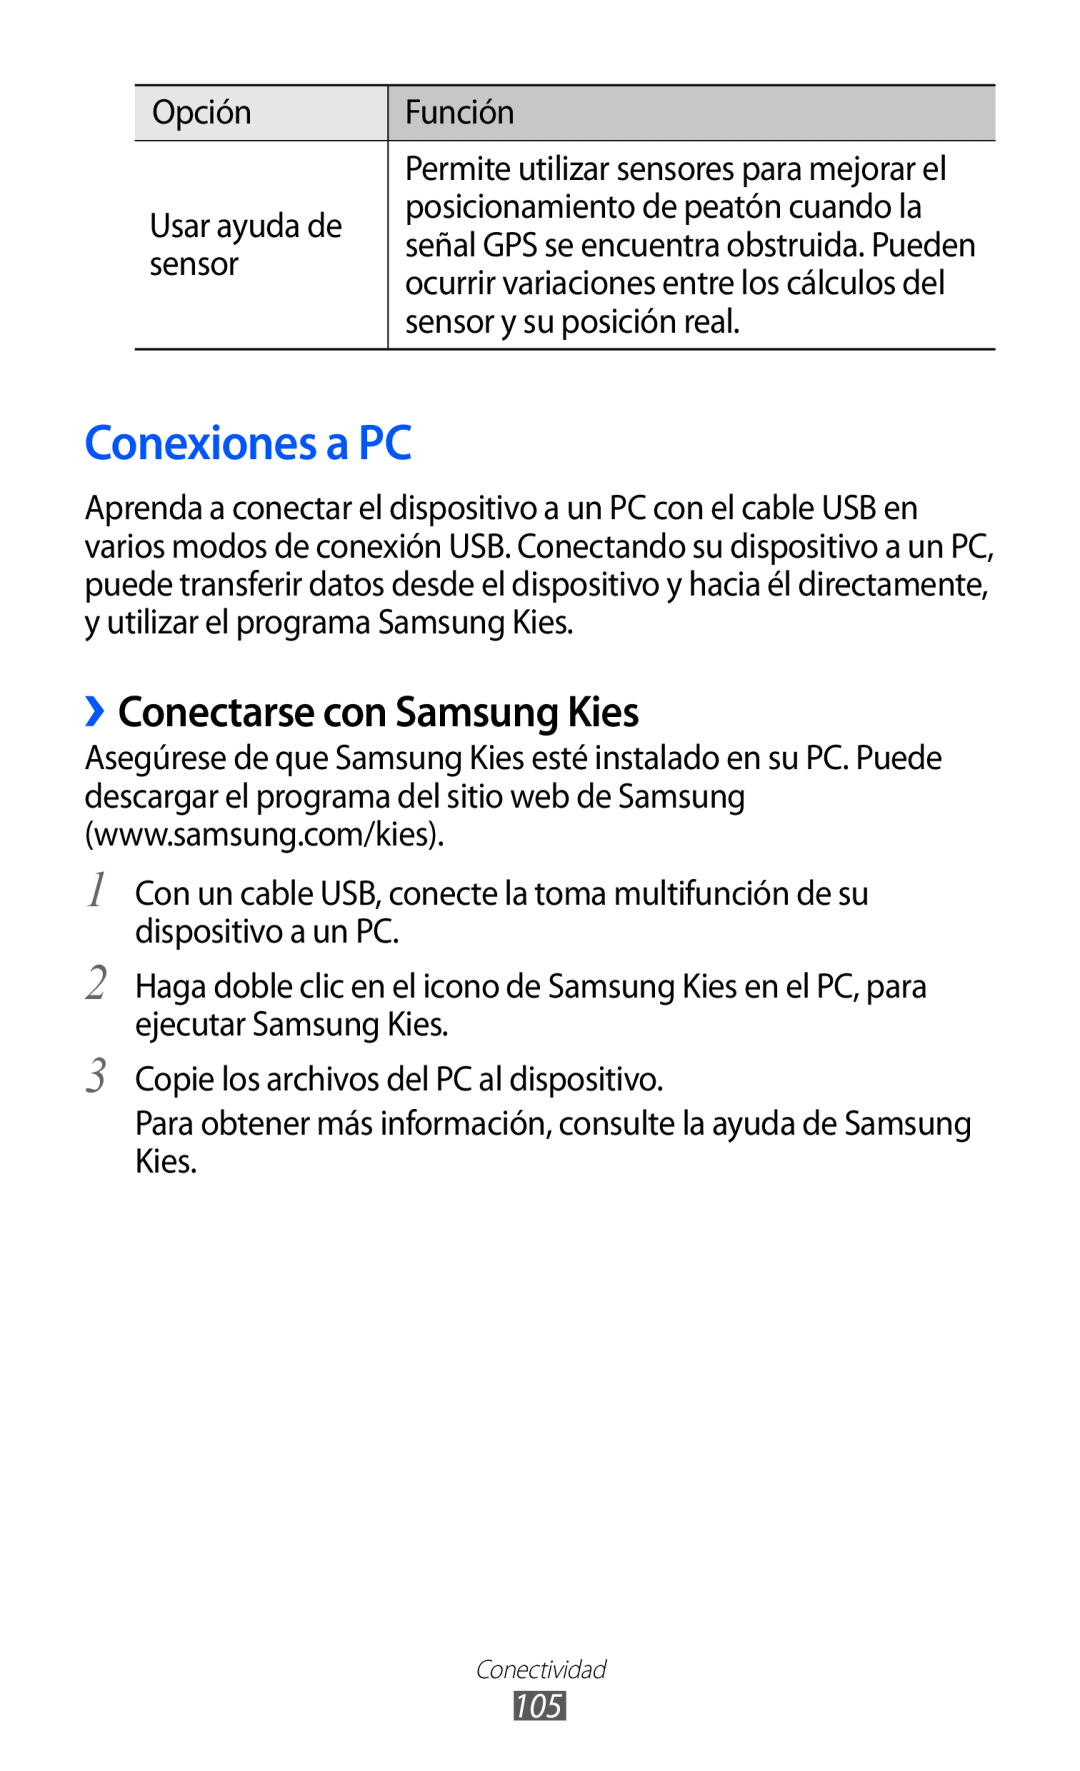 Samsung GT-S6500ZYAAMN, GT-S6500RWDTMN, GT-S6500RWAITV, GT-S6500XKADBT manual Conexiones a PC, ››Conectarse con Samsung Kies 